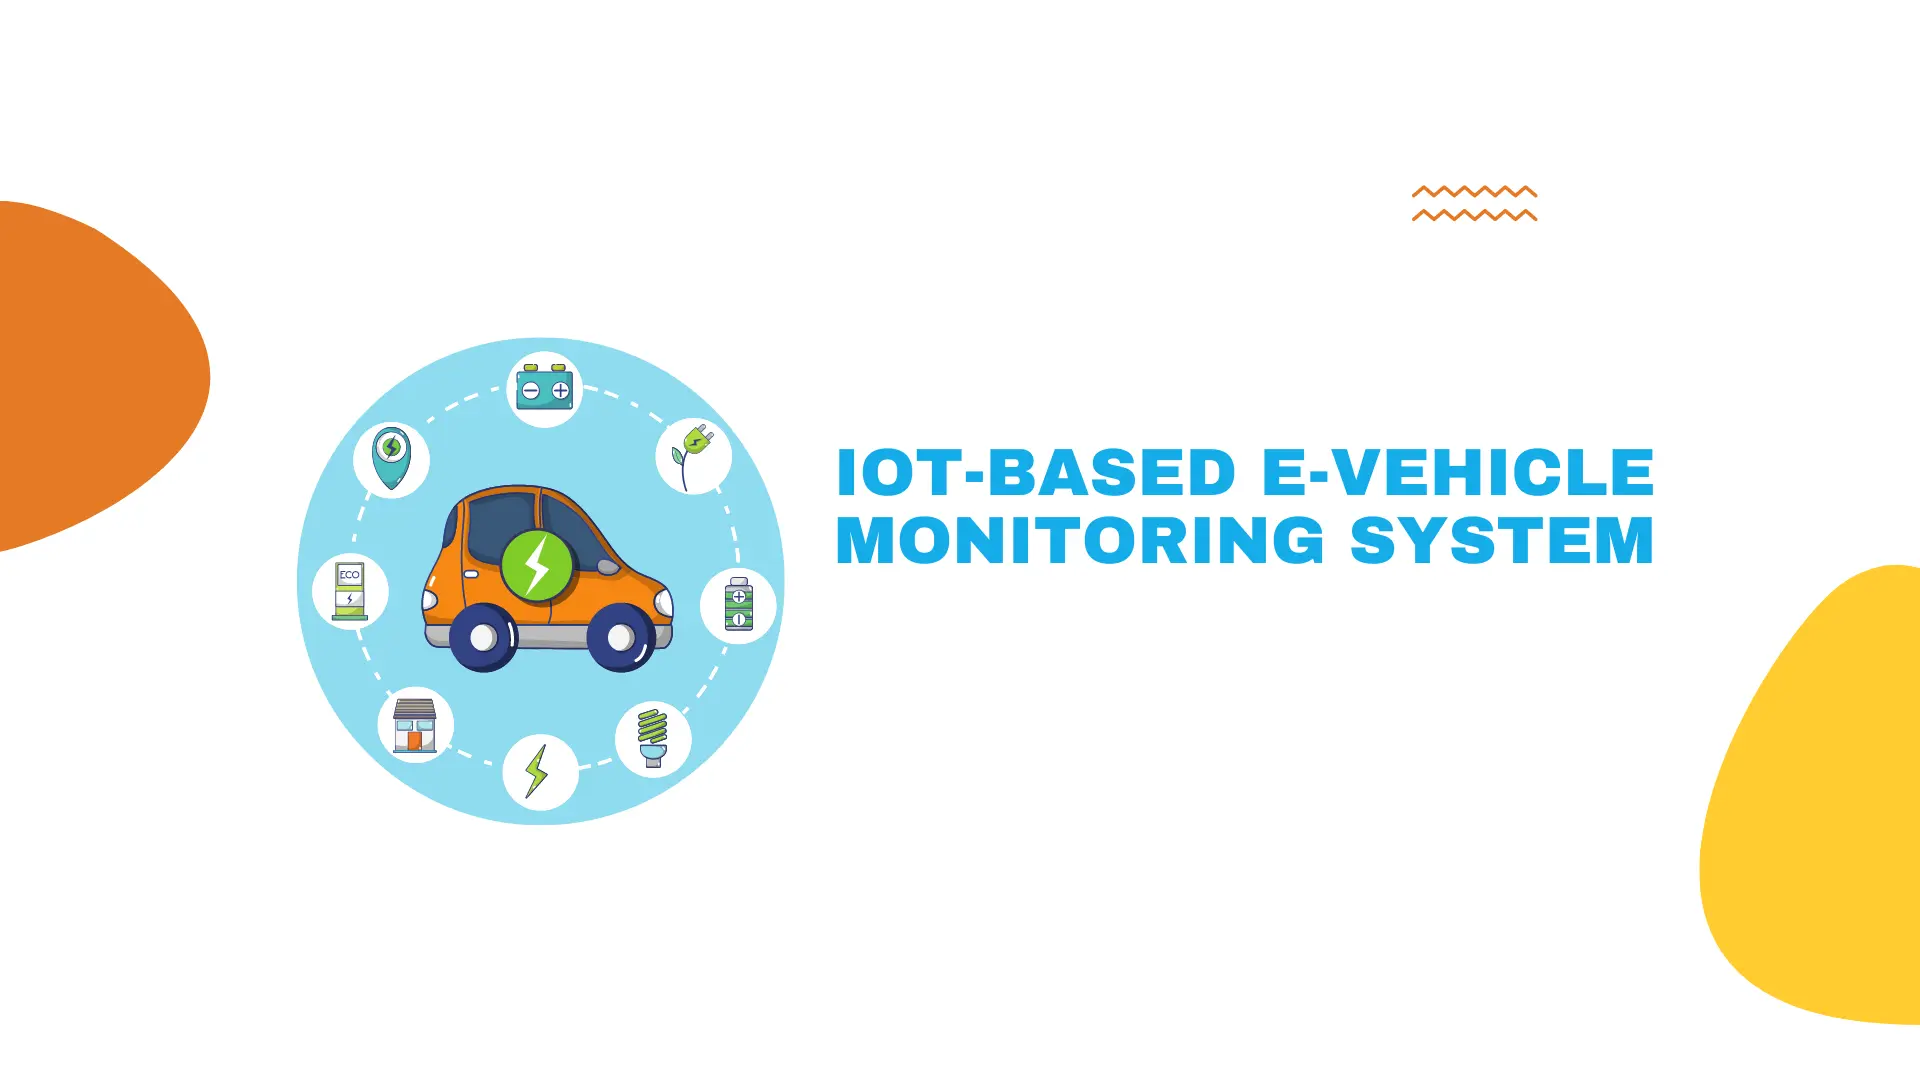 IoT-based e-vehicle monitoring system